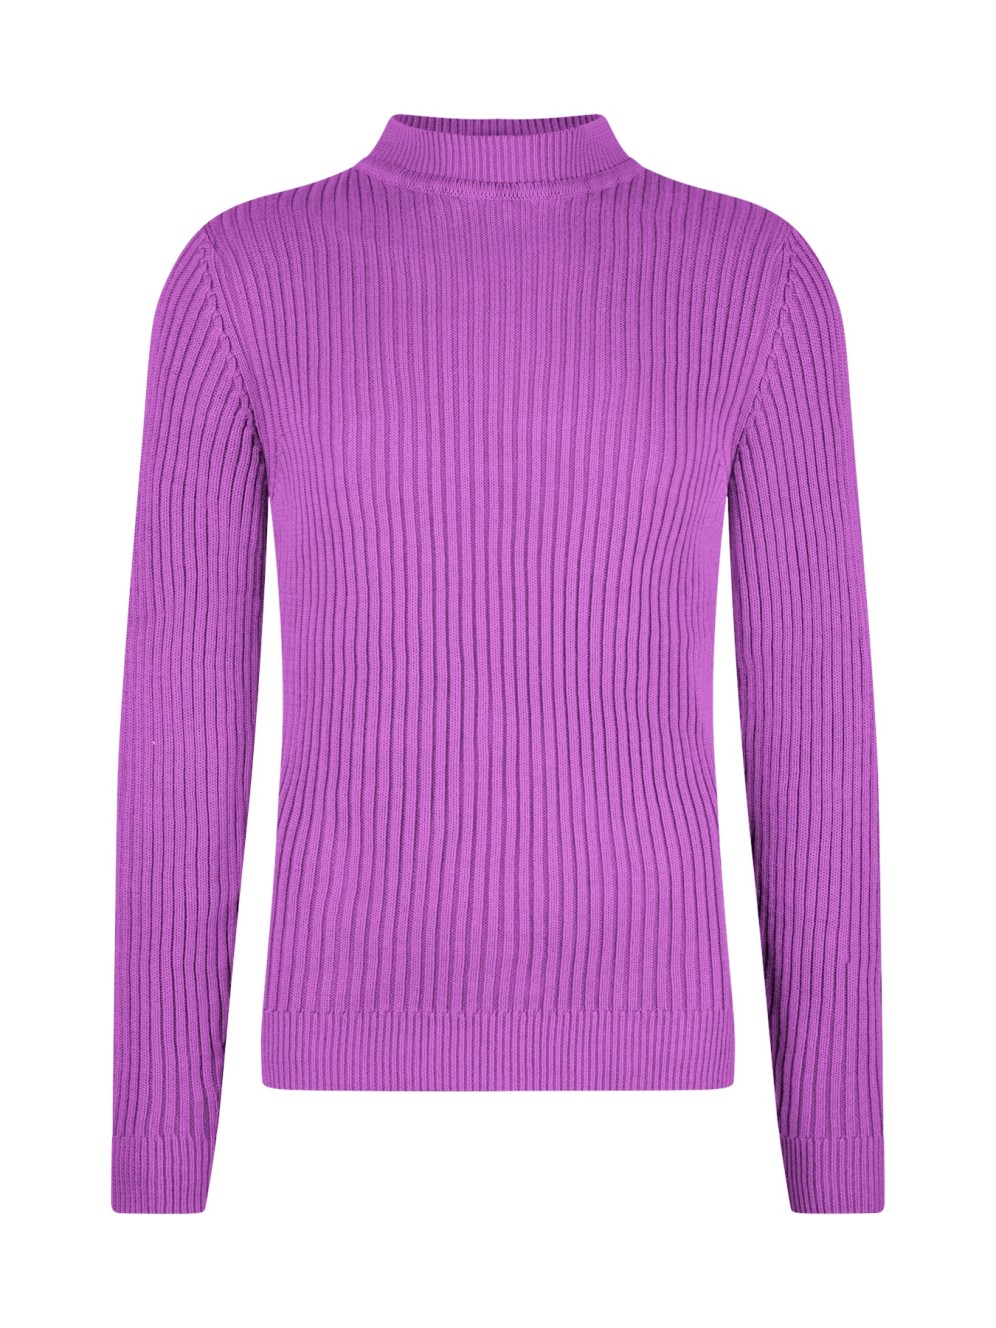 Knox Jumper | Cotton Rib knit | Purple